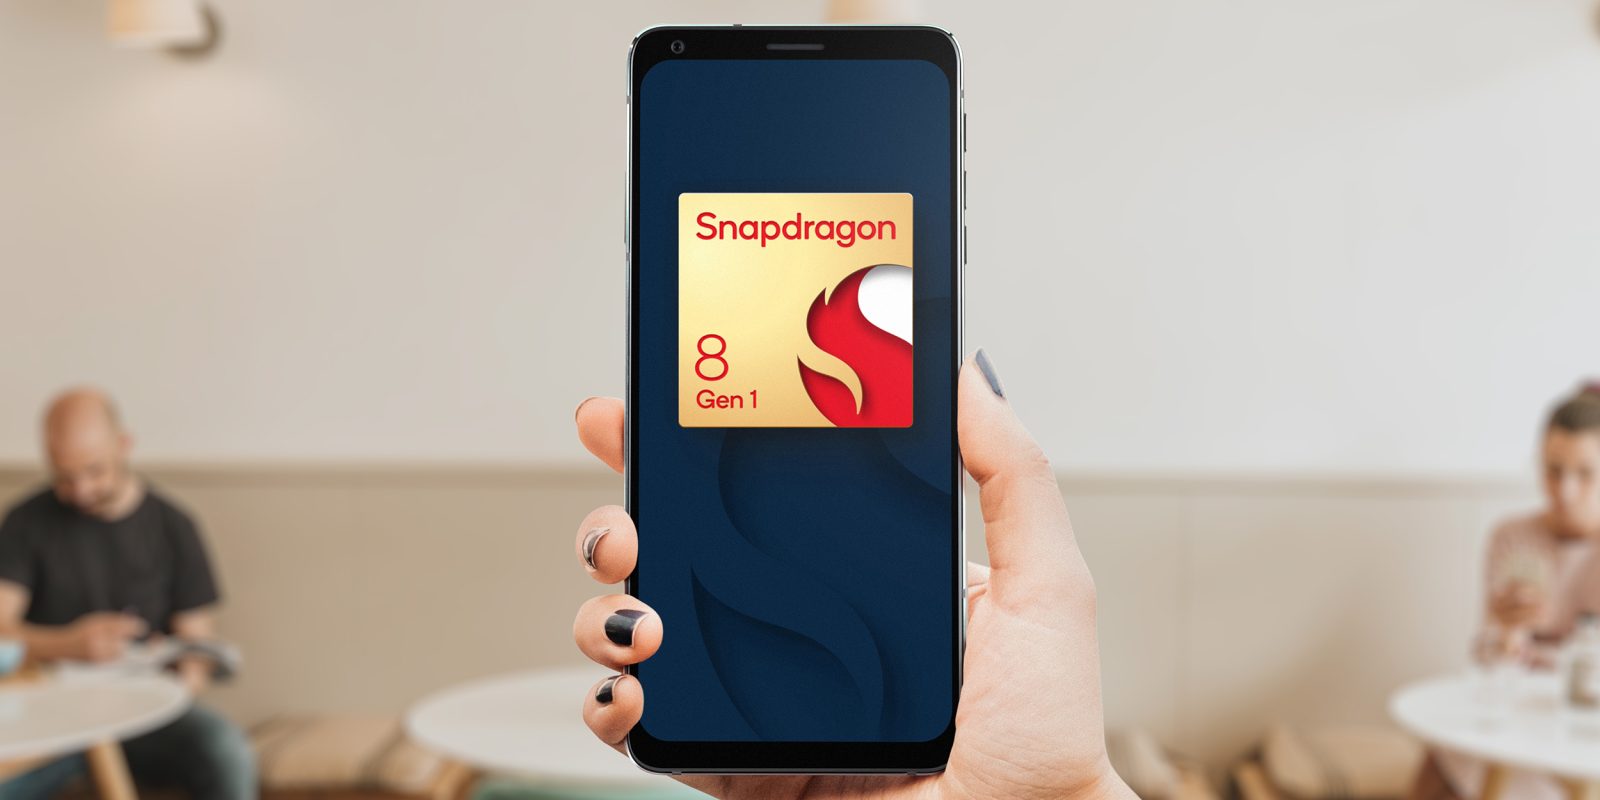 Snapdragon 8 Gen 1 smartphones